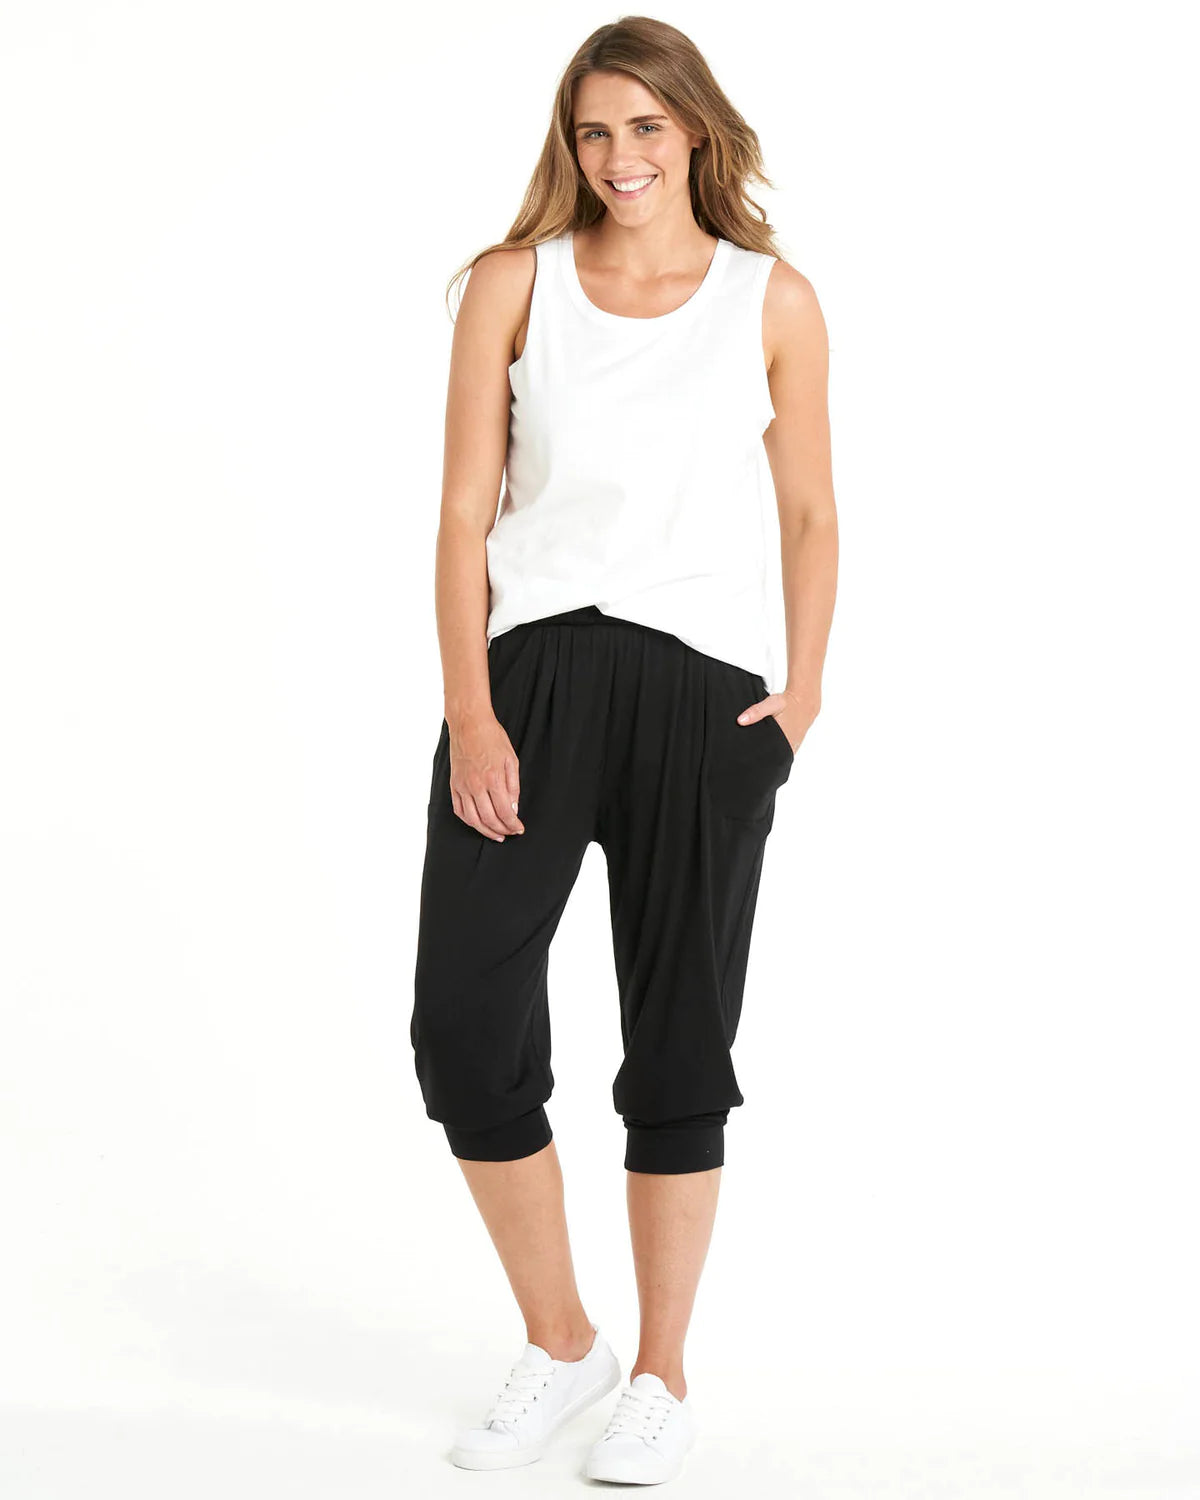 SAHARA 3Q ladies 3/4 pants | PROGRESS sportswear, Ltd.